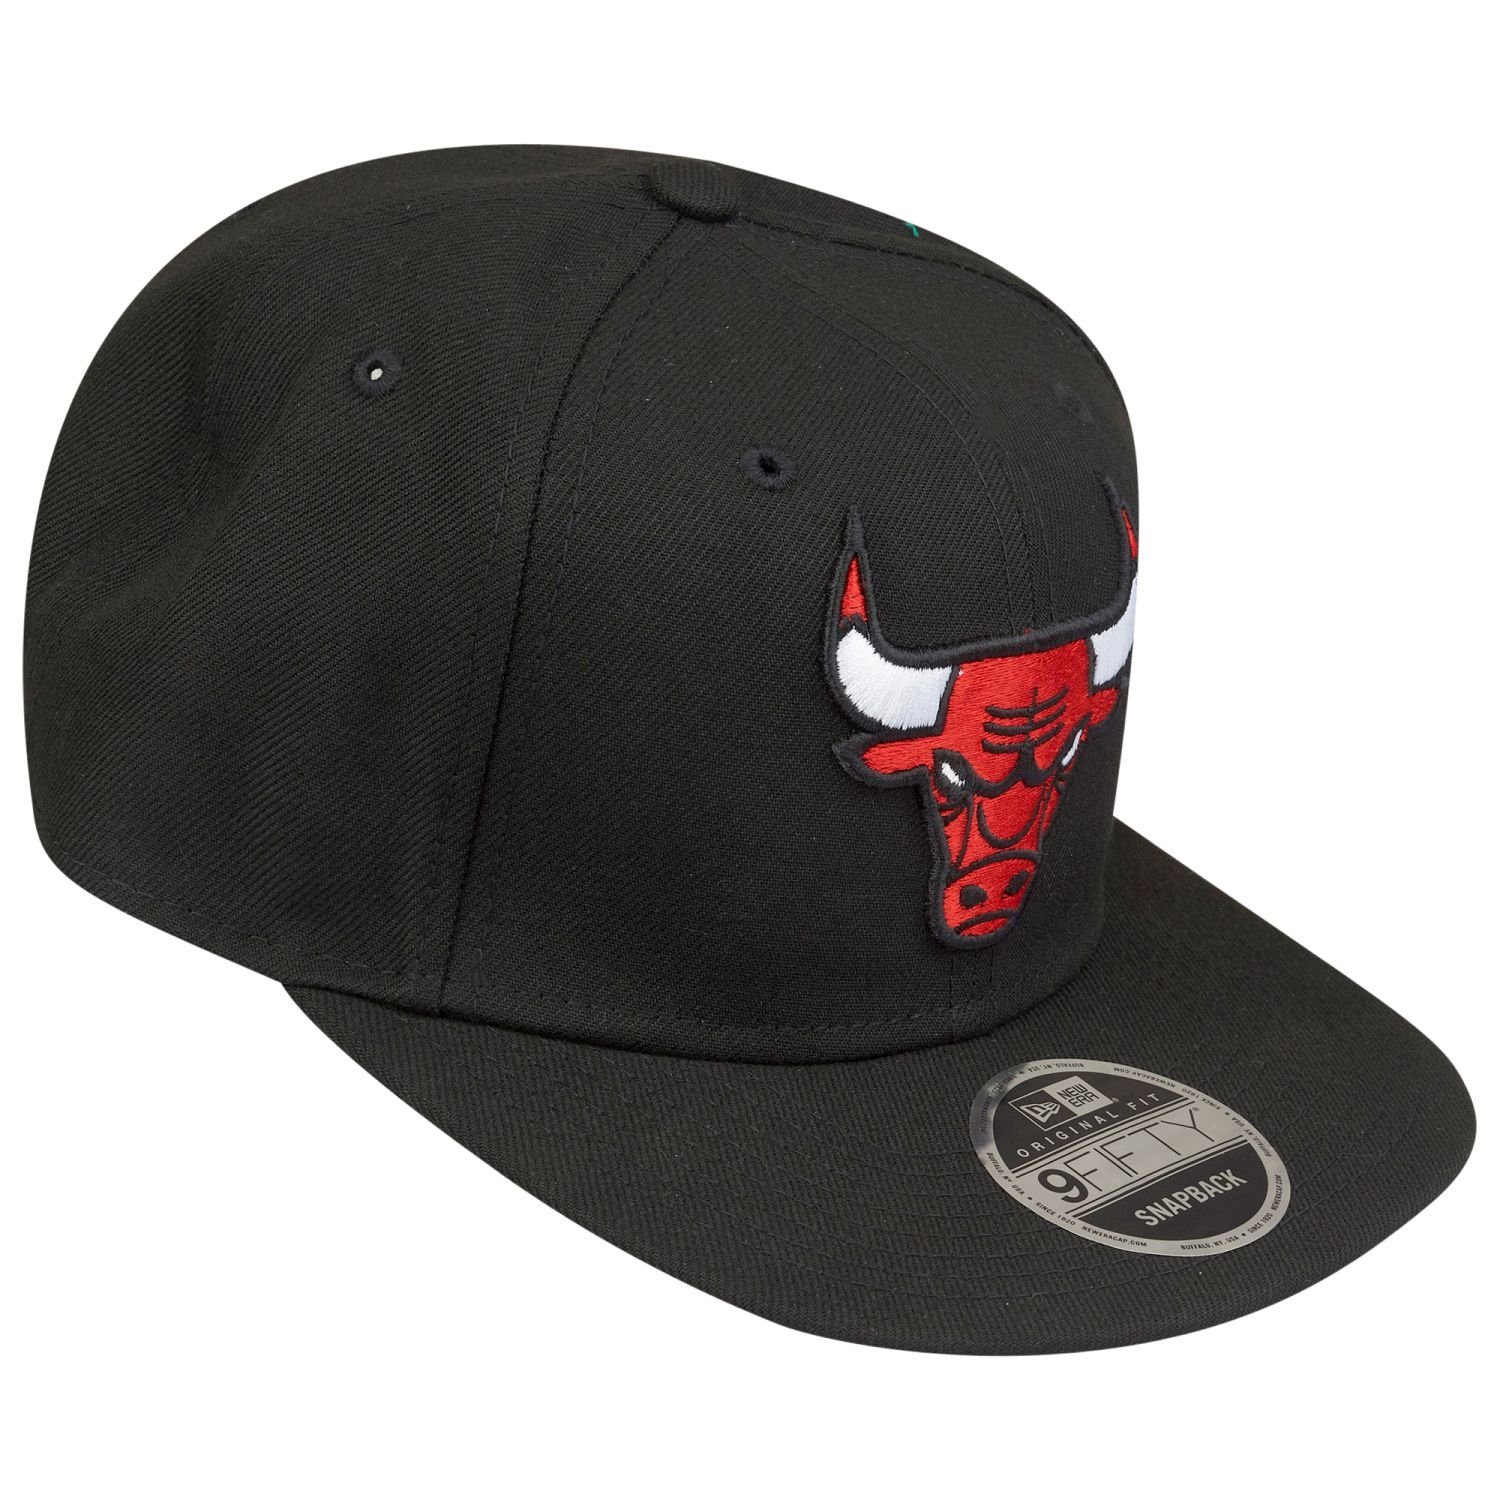 New Era Snapback Cap 9Fifty Chicago Bulls Original